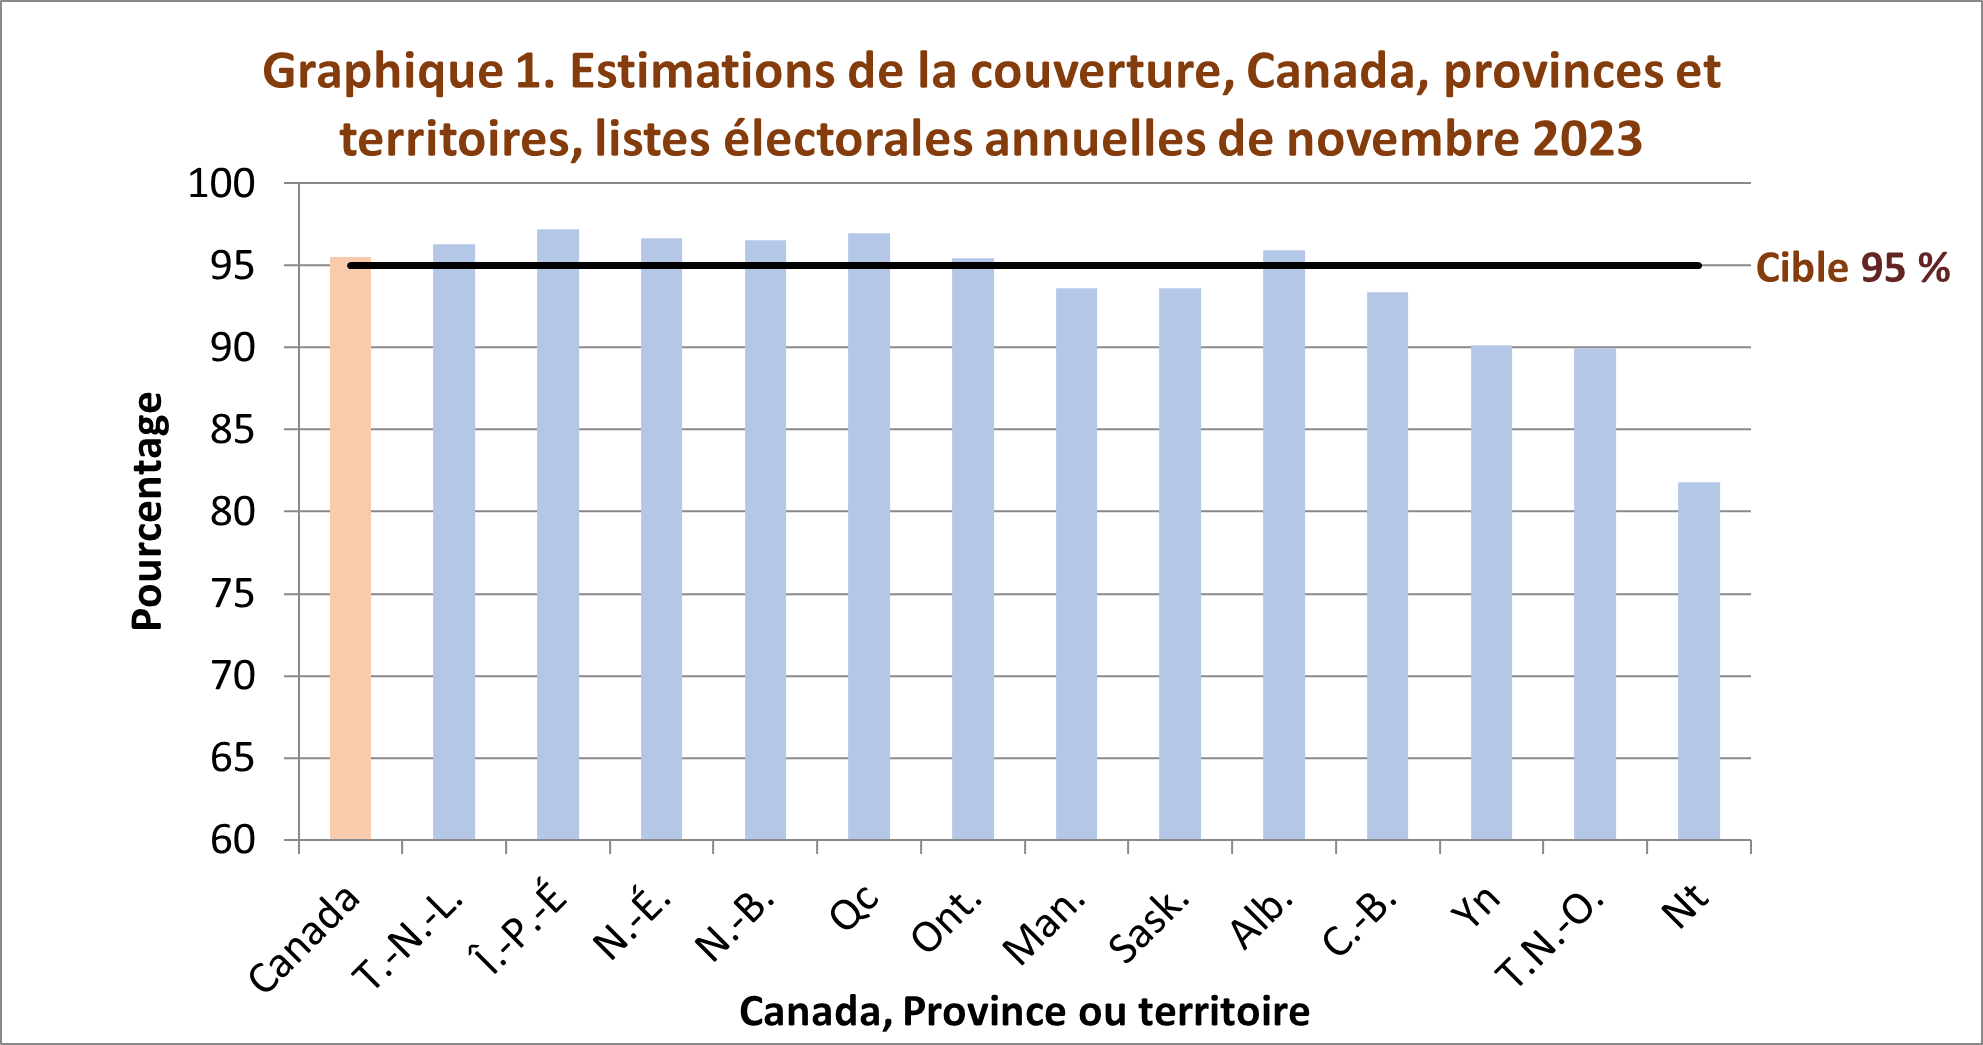 Graphique 1. Estimations de la couverture, Canada, provinces et territoires,
listes électorales annuelles de novembre 2022